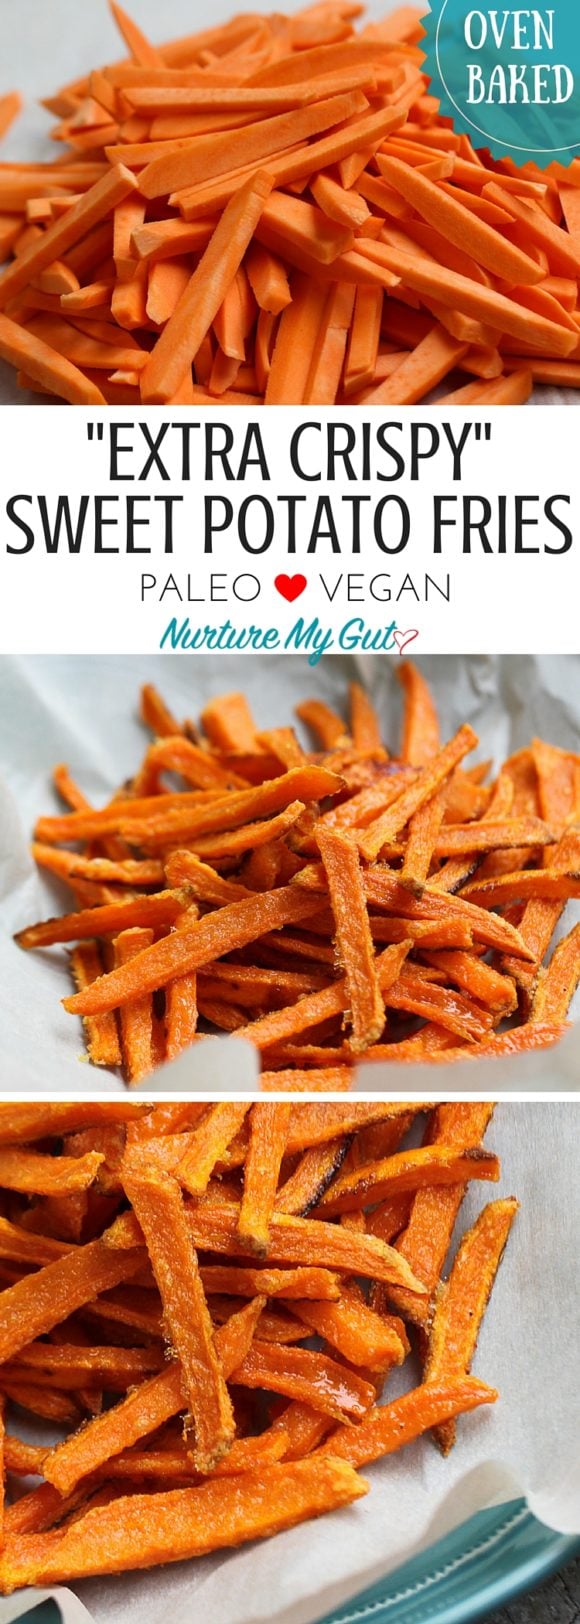 Crispy Oven Baked Sweet Potato Fries